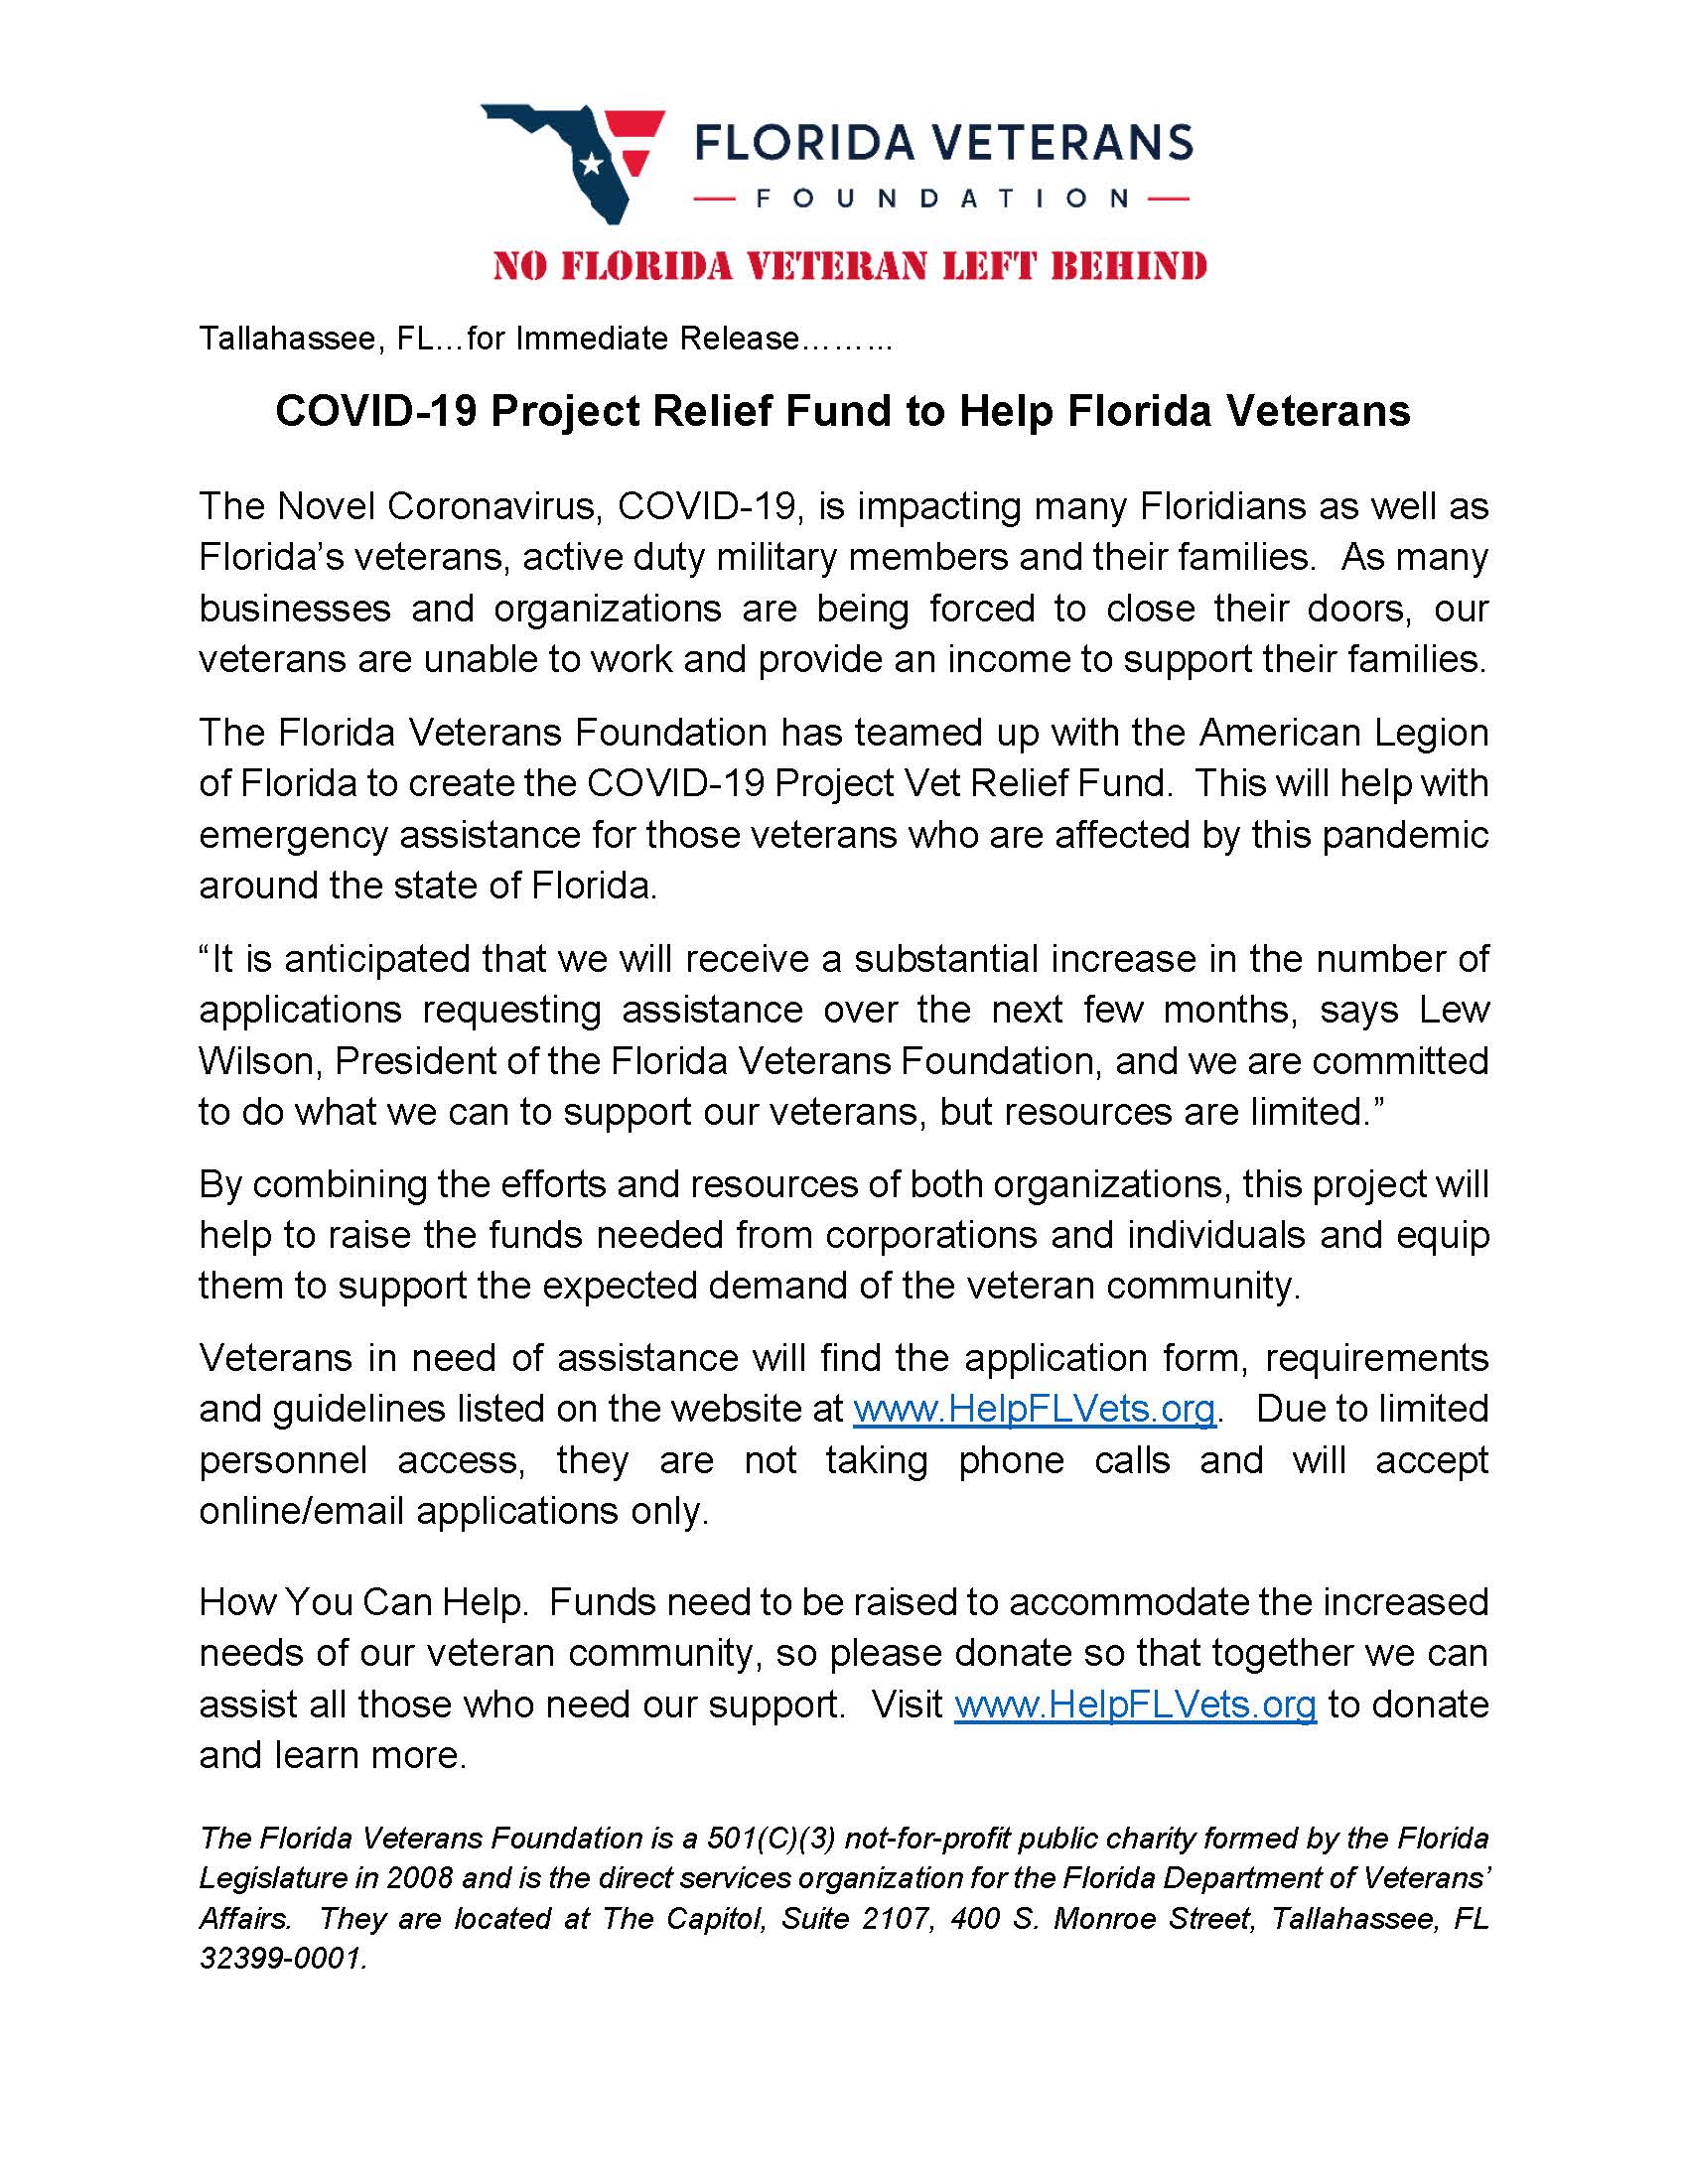 COVID-19 Press Release3.Florida Veterans Foundation